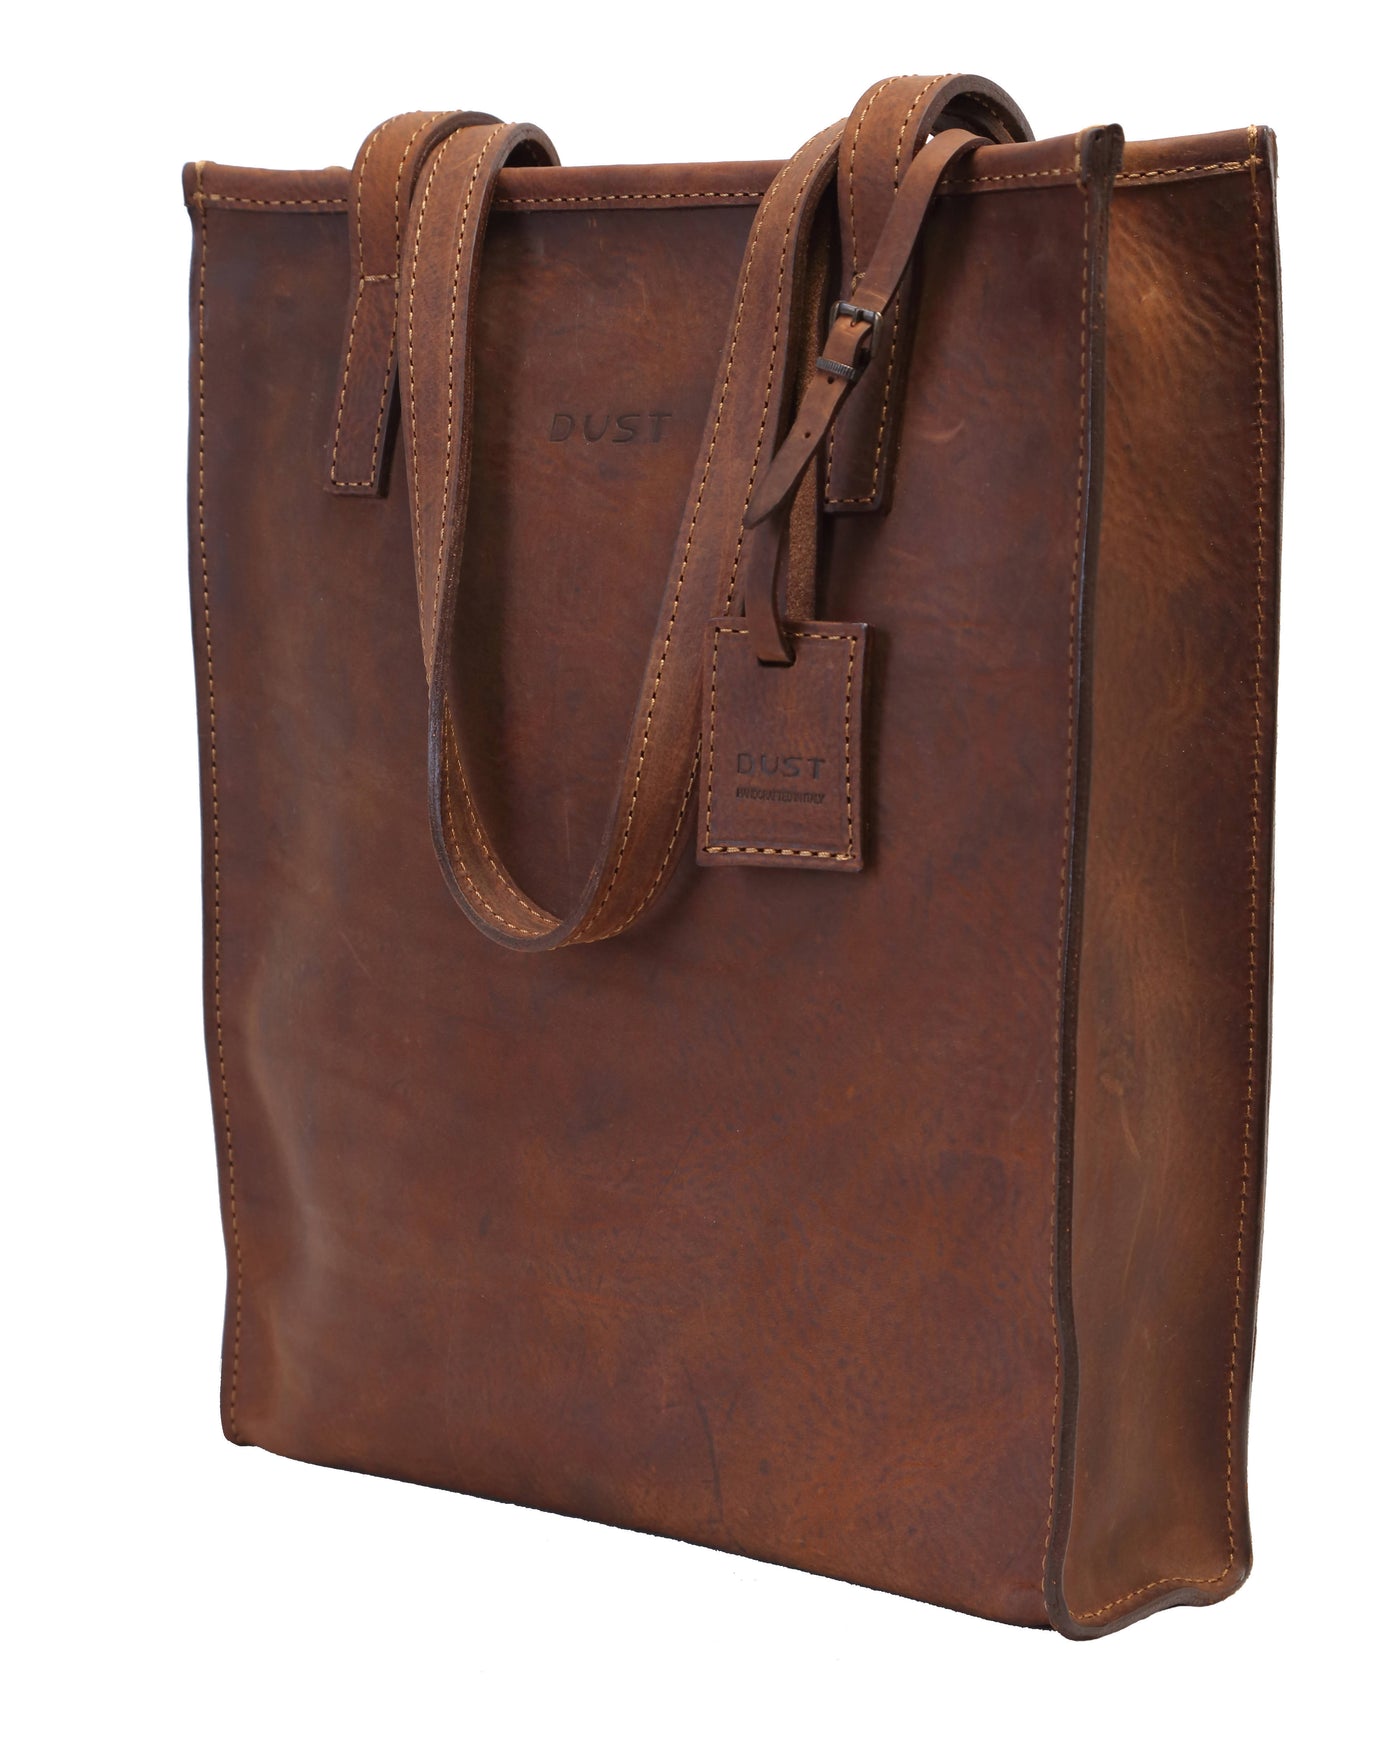 Tote bag en cuir marron vintage - Mod 105 - Image 4